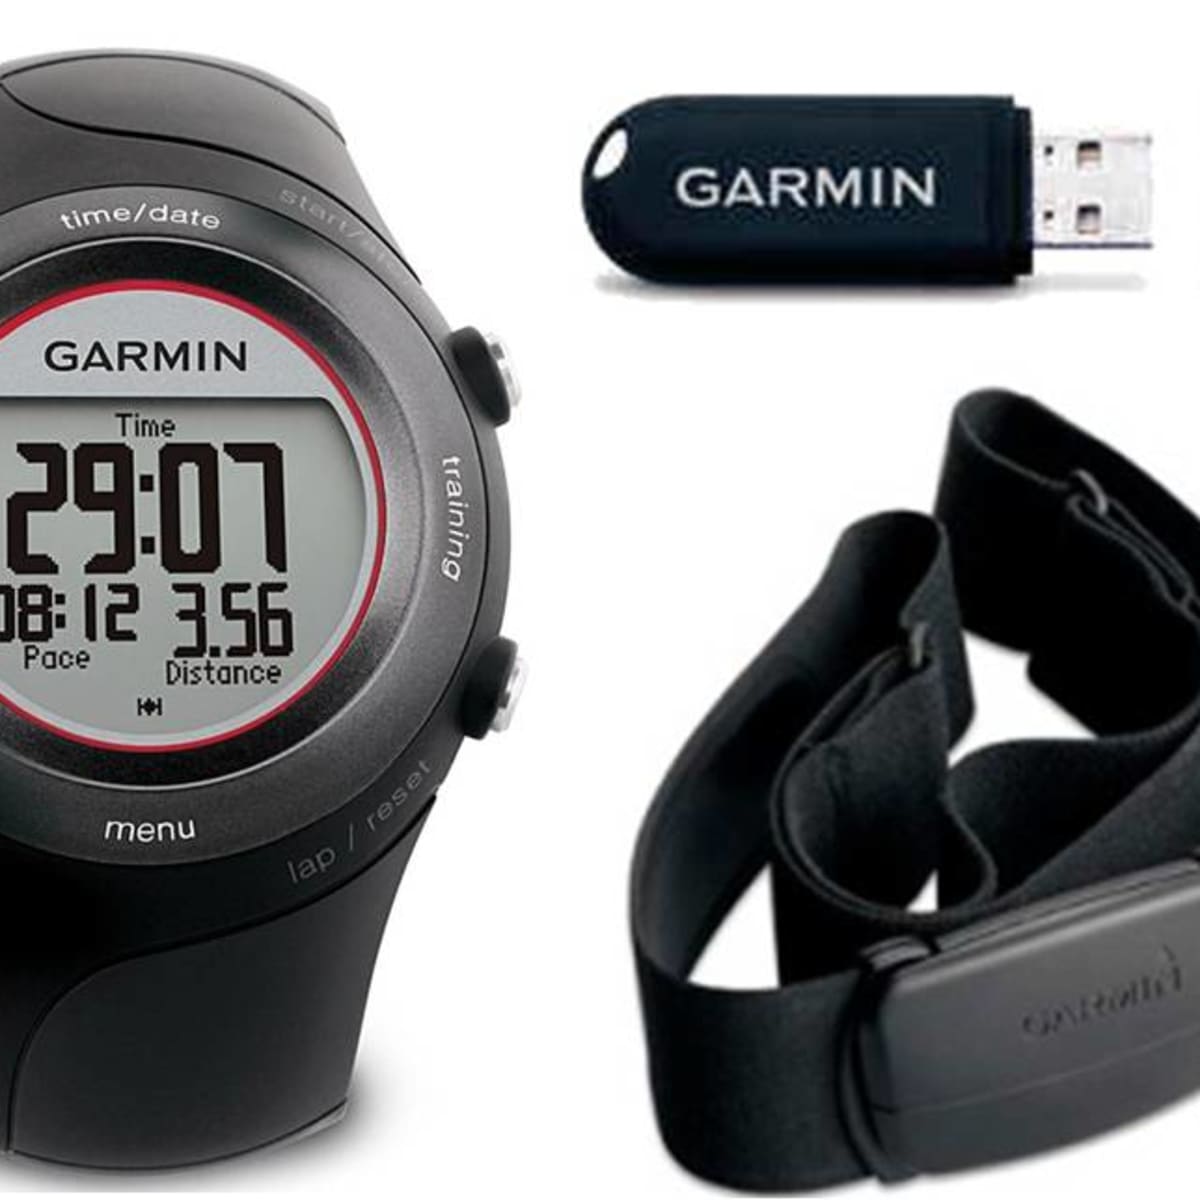 Running With the Garmin Forerunner GPS - CalorieBee